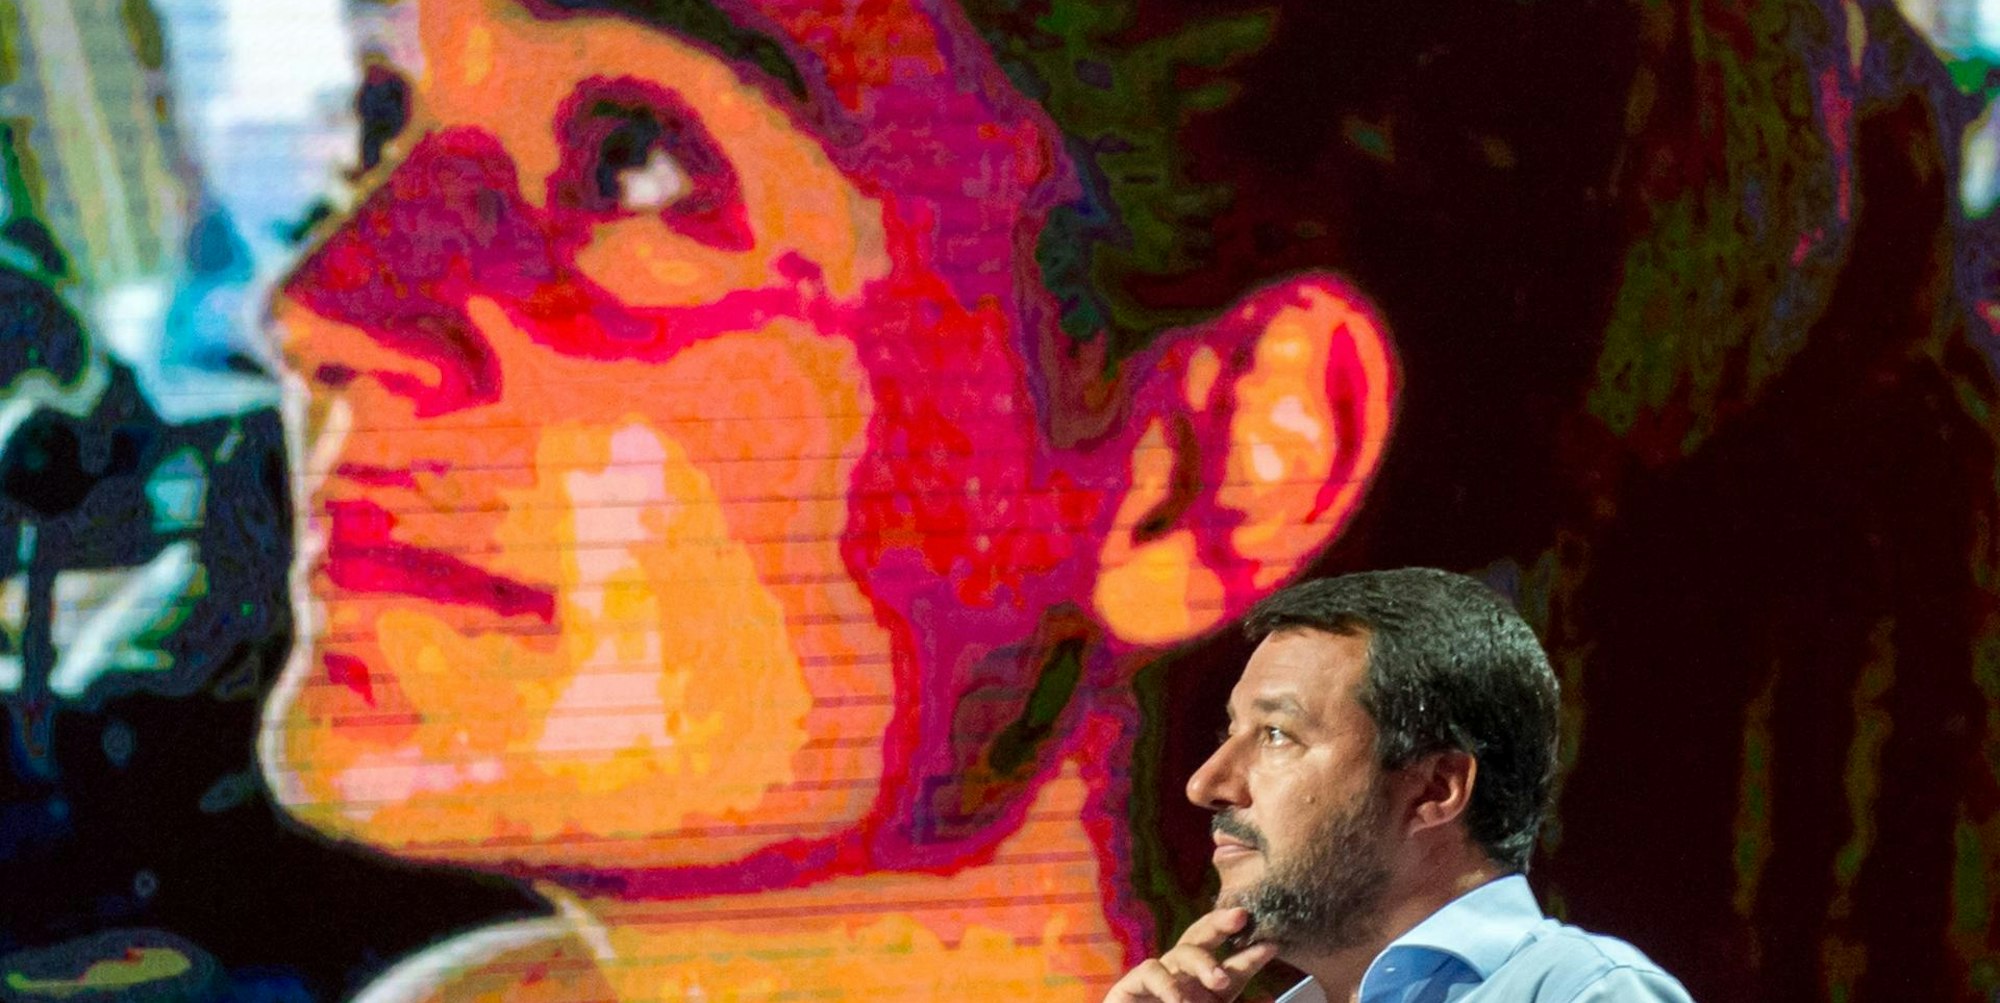 Rackete und Salvini